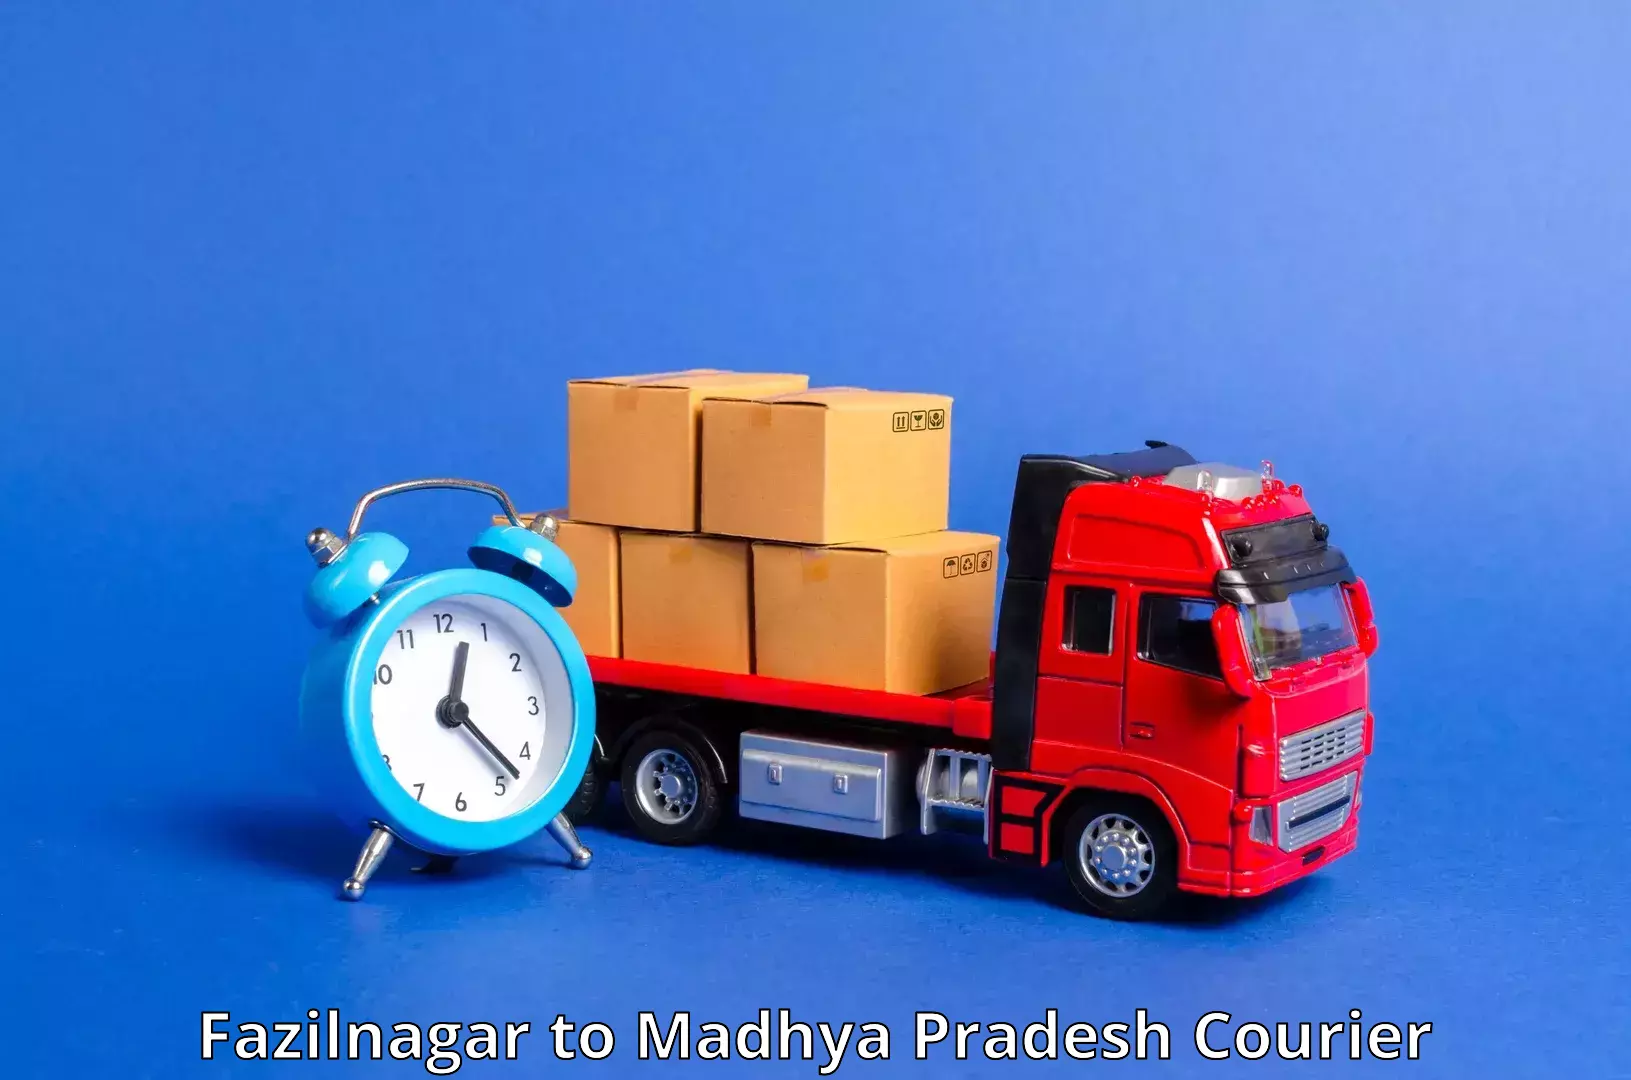 24-hour courier service Fazilnagar to Shivpuri